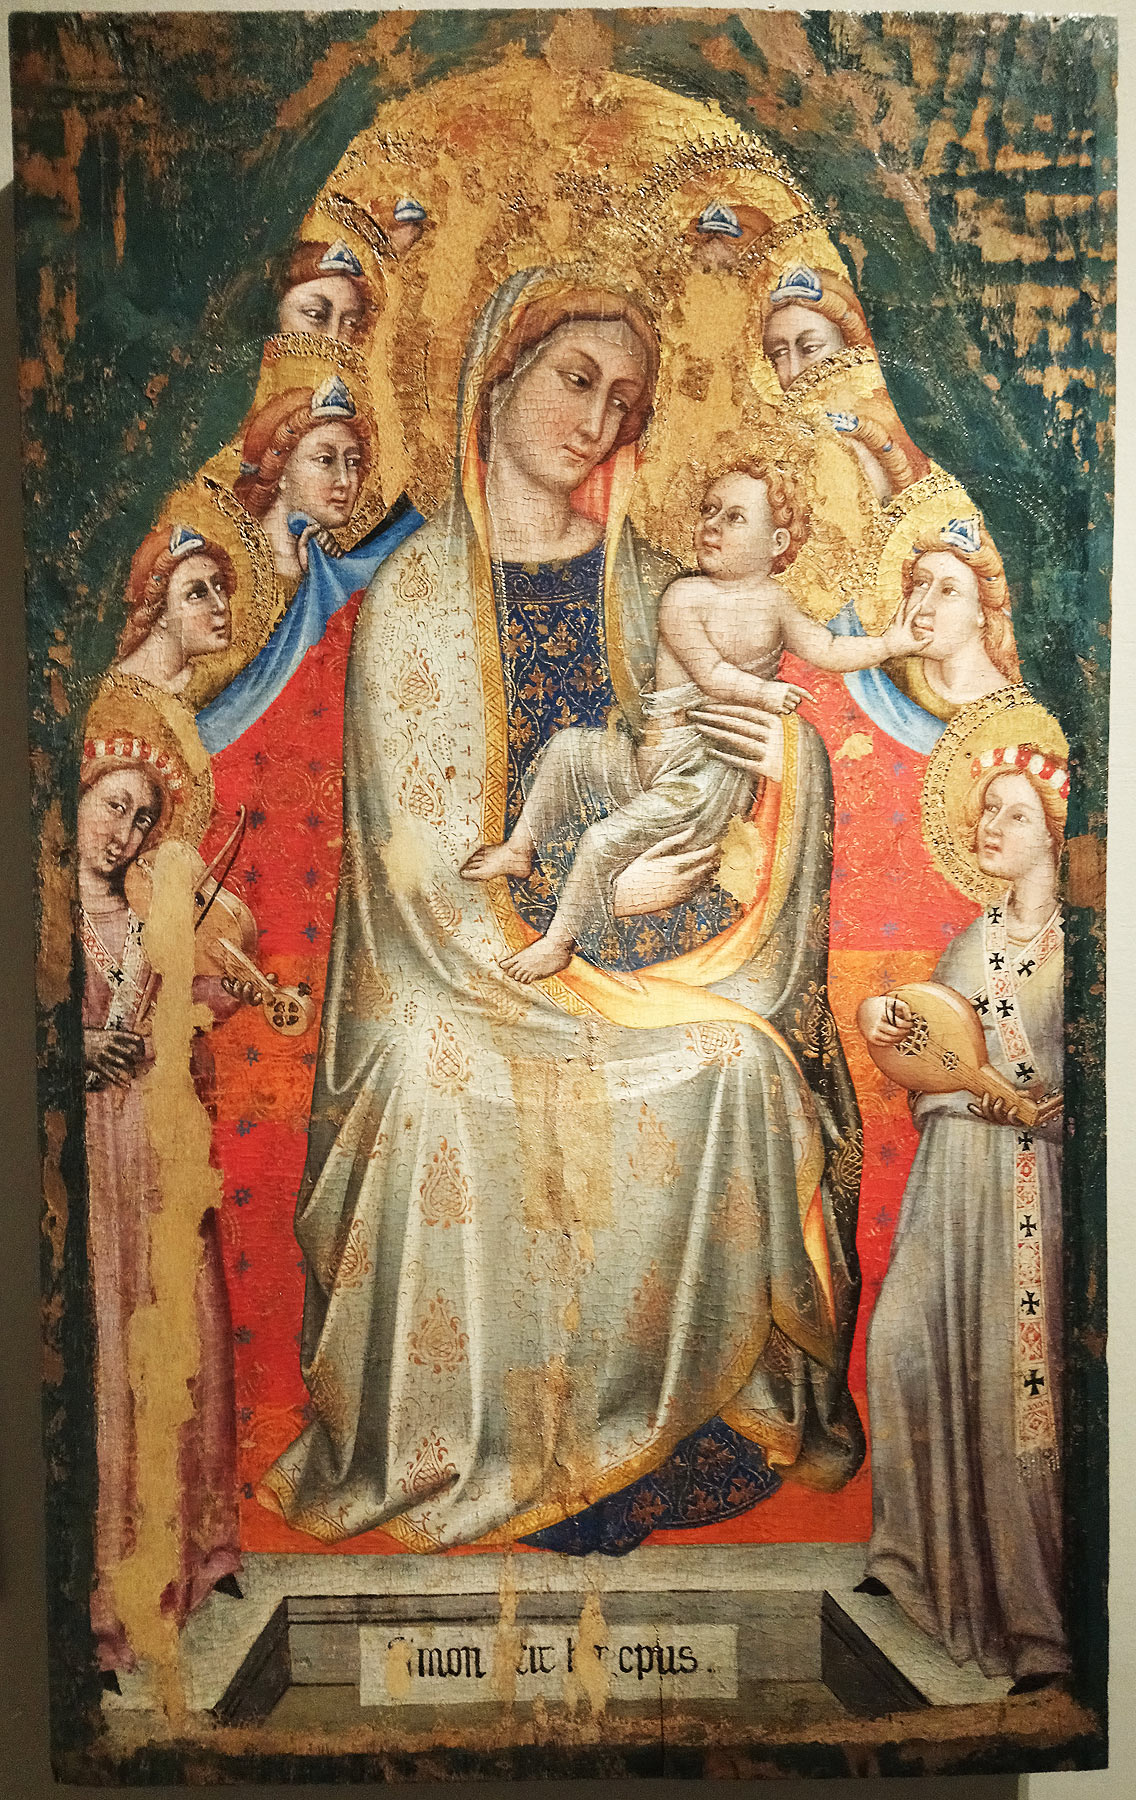 Simone dei Crocifissi, Madonna col Bambino in trono fra angeli (1390-1399 circa; tempera su tavola, 96 x 59; Modena, Galleria Estense)
